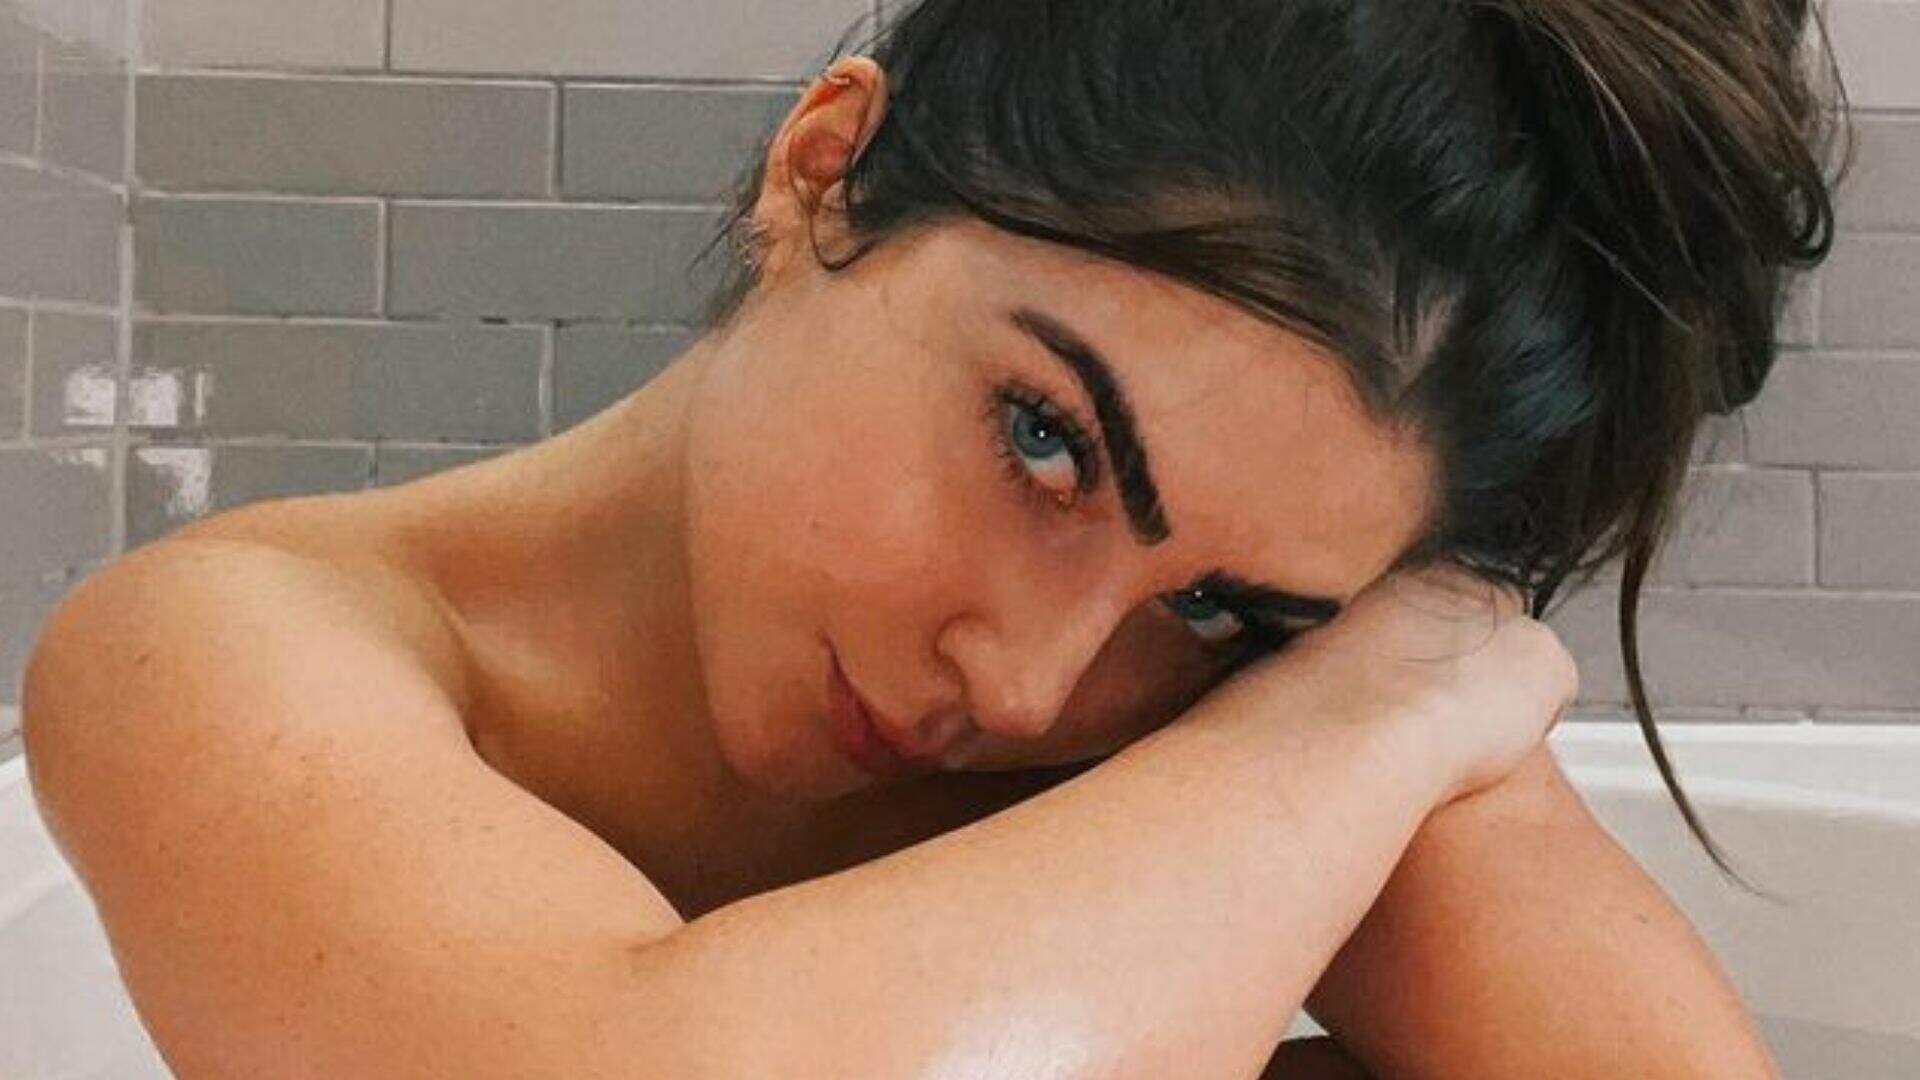 Jade Picon resolve gravar vídeo para o Instagram tomando banho: “BBB não mostrou isso”